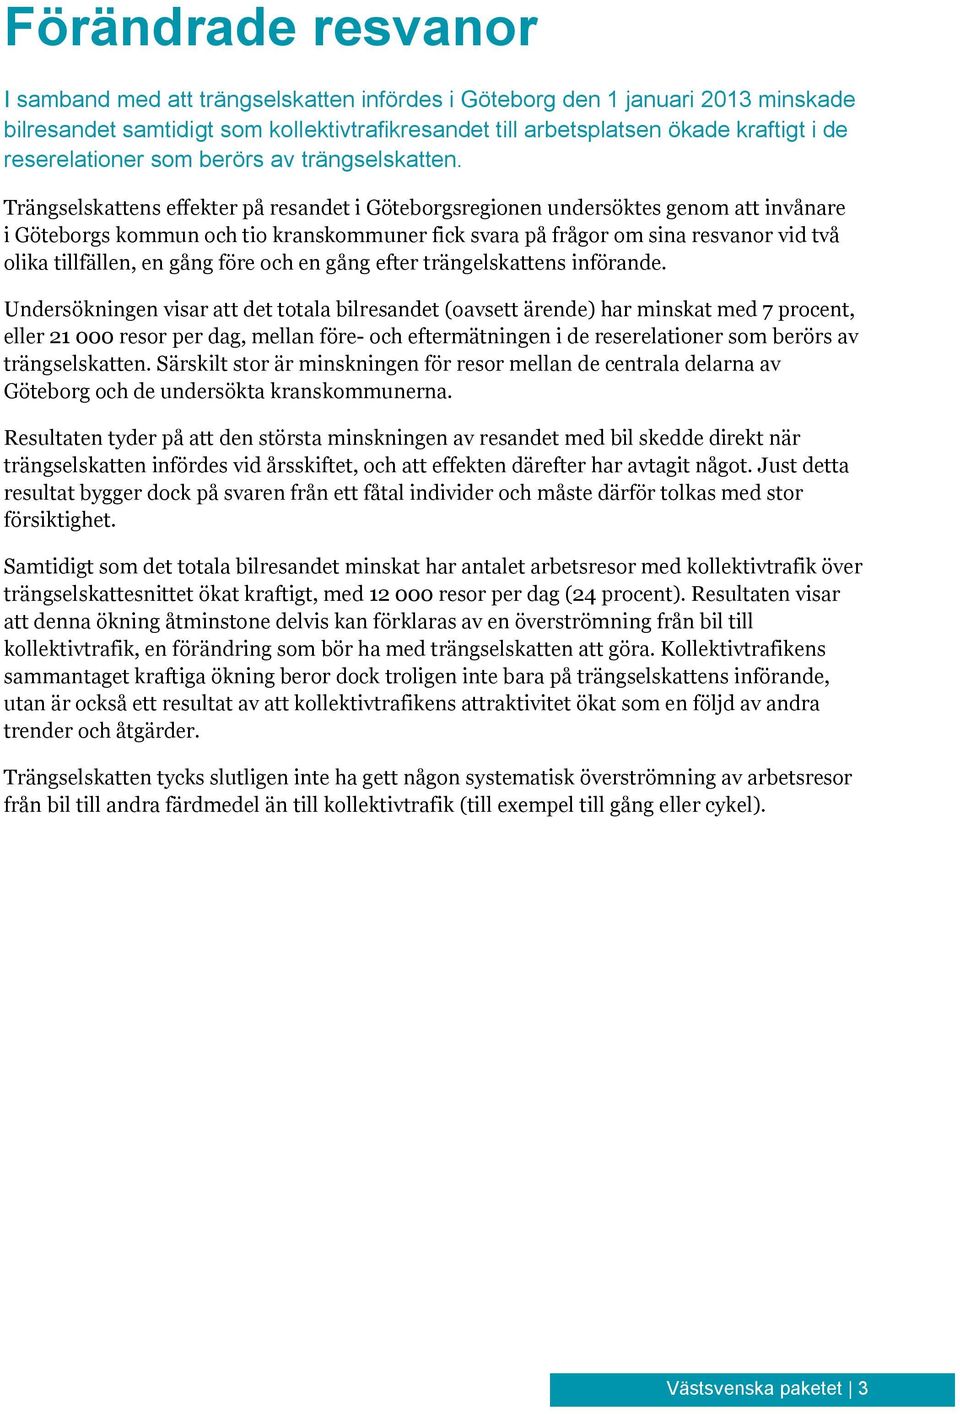 Trängselskattens effekter på resandet i Göteborgsregionen undersöktes genom att invånare i Göteborgs kommun och tio kranskommuner fick svara på frågor om sina resvanor vid två olika tillfällen, en